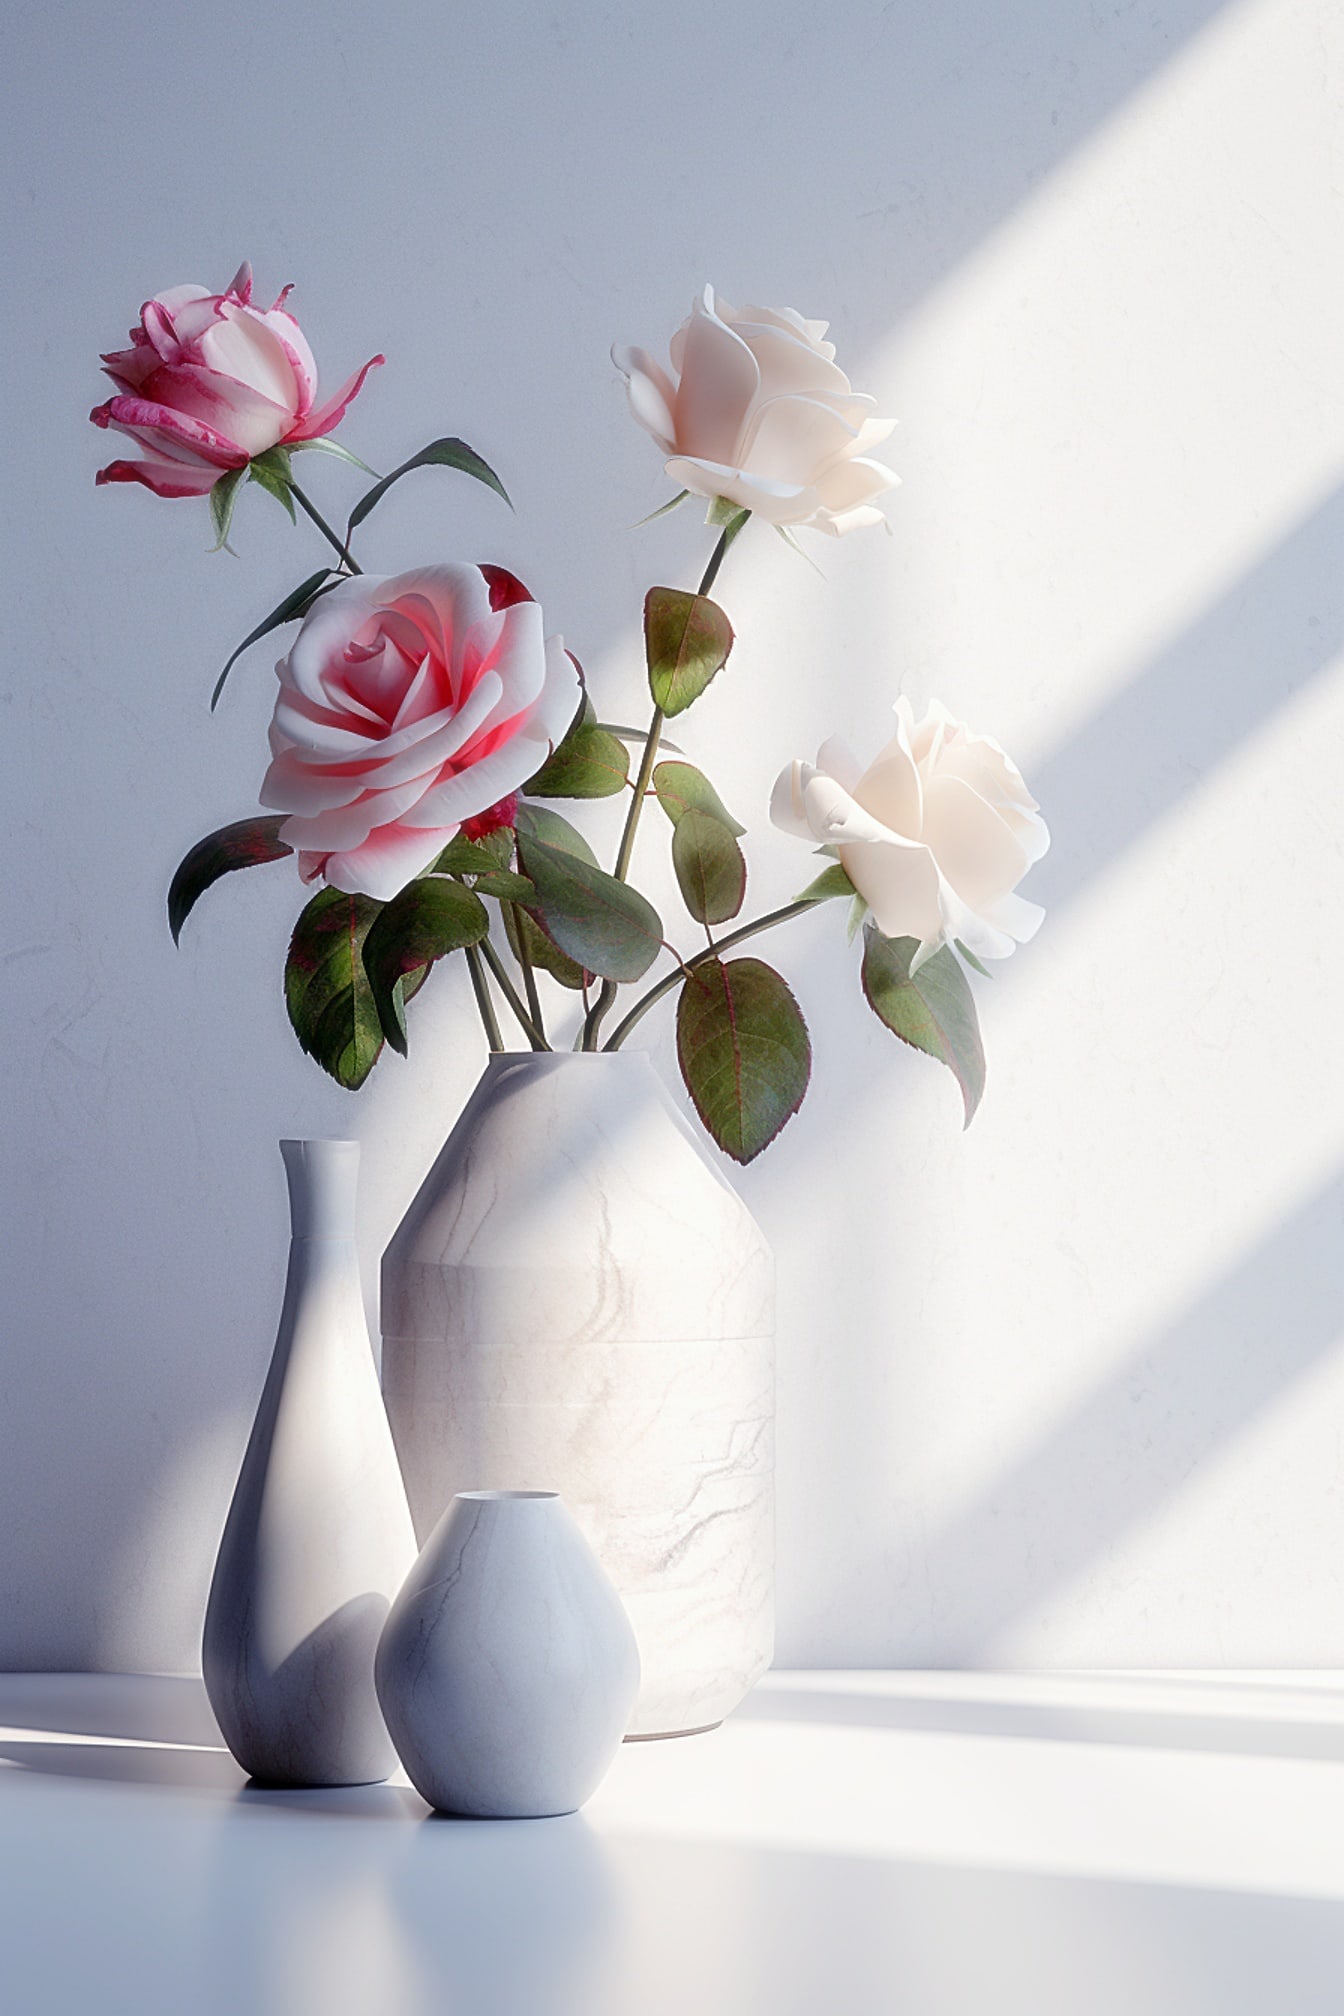 Beige marmorvase med rosenblomster i den